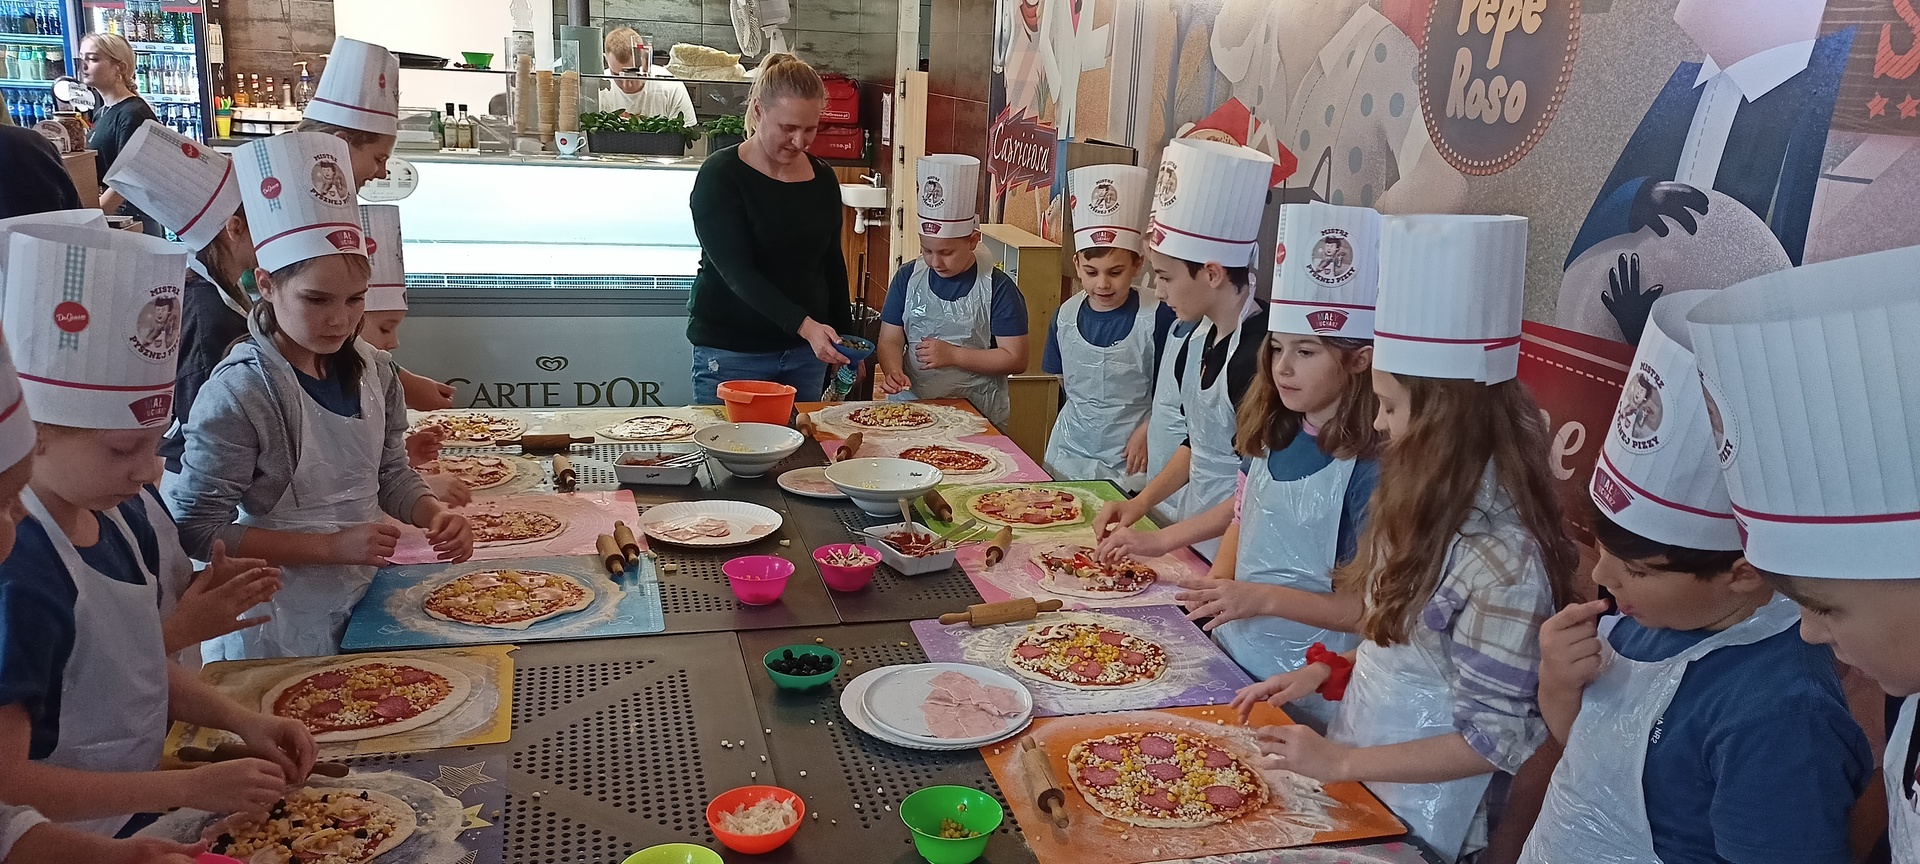 uczniowie przygotowujący kolorowe pizze.jpg